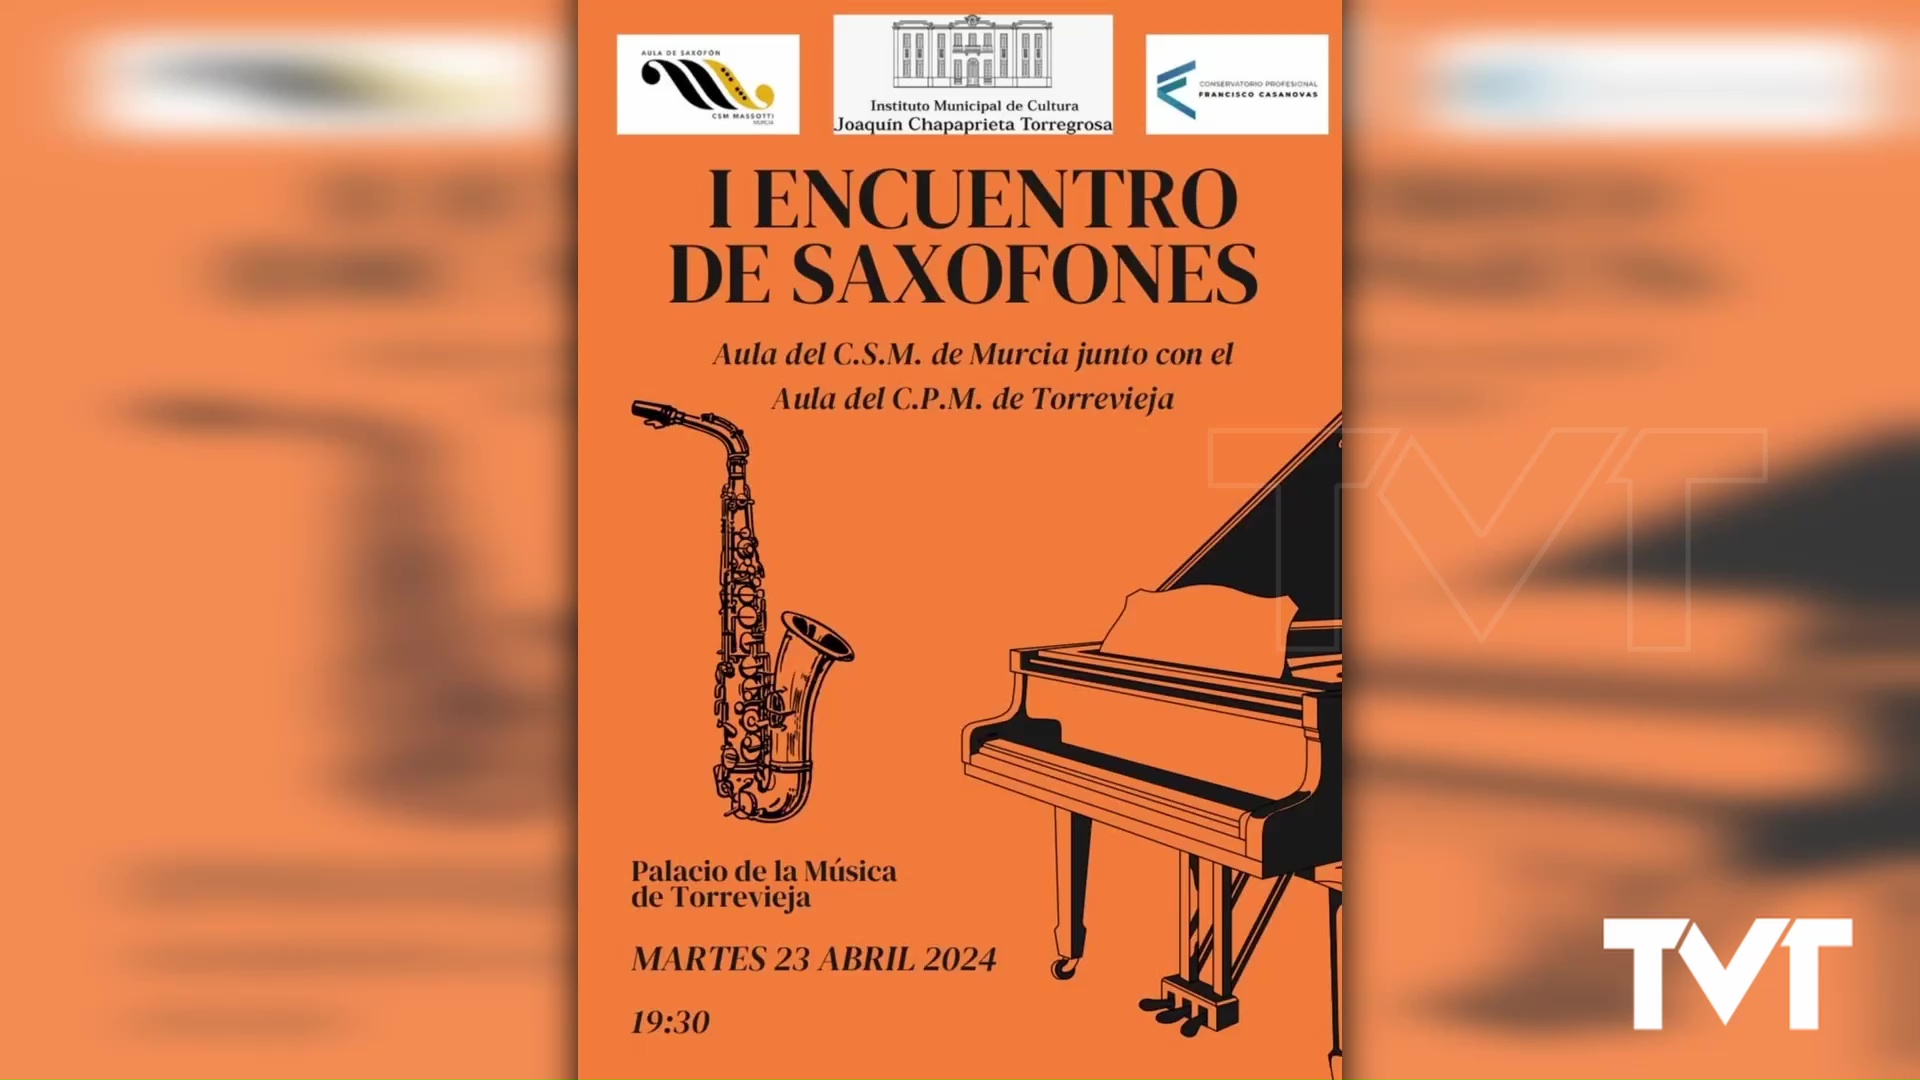 Imagen de El 23 de abril nos espera un encuentro de saxofones con las aulas de los conservatorios de Murcia y Torrevieja 